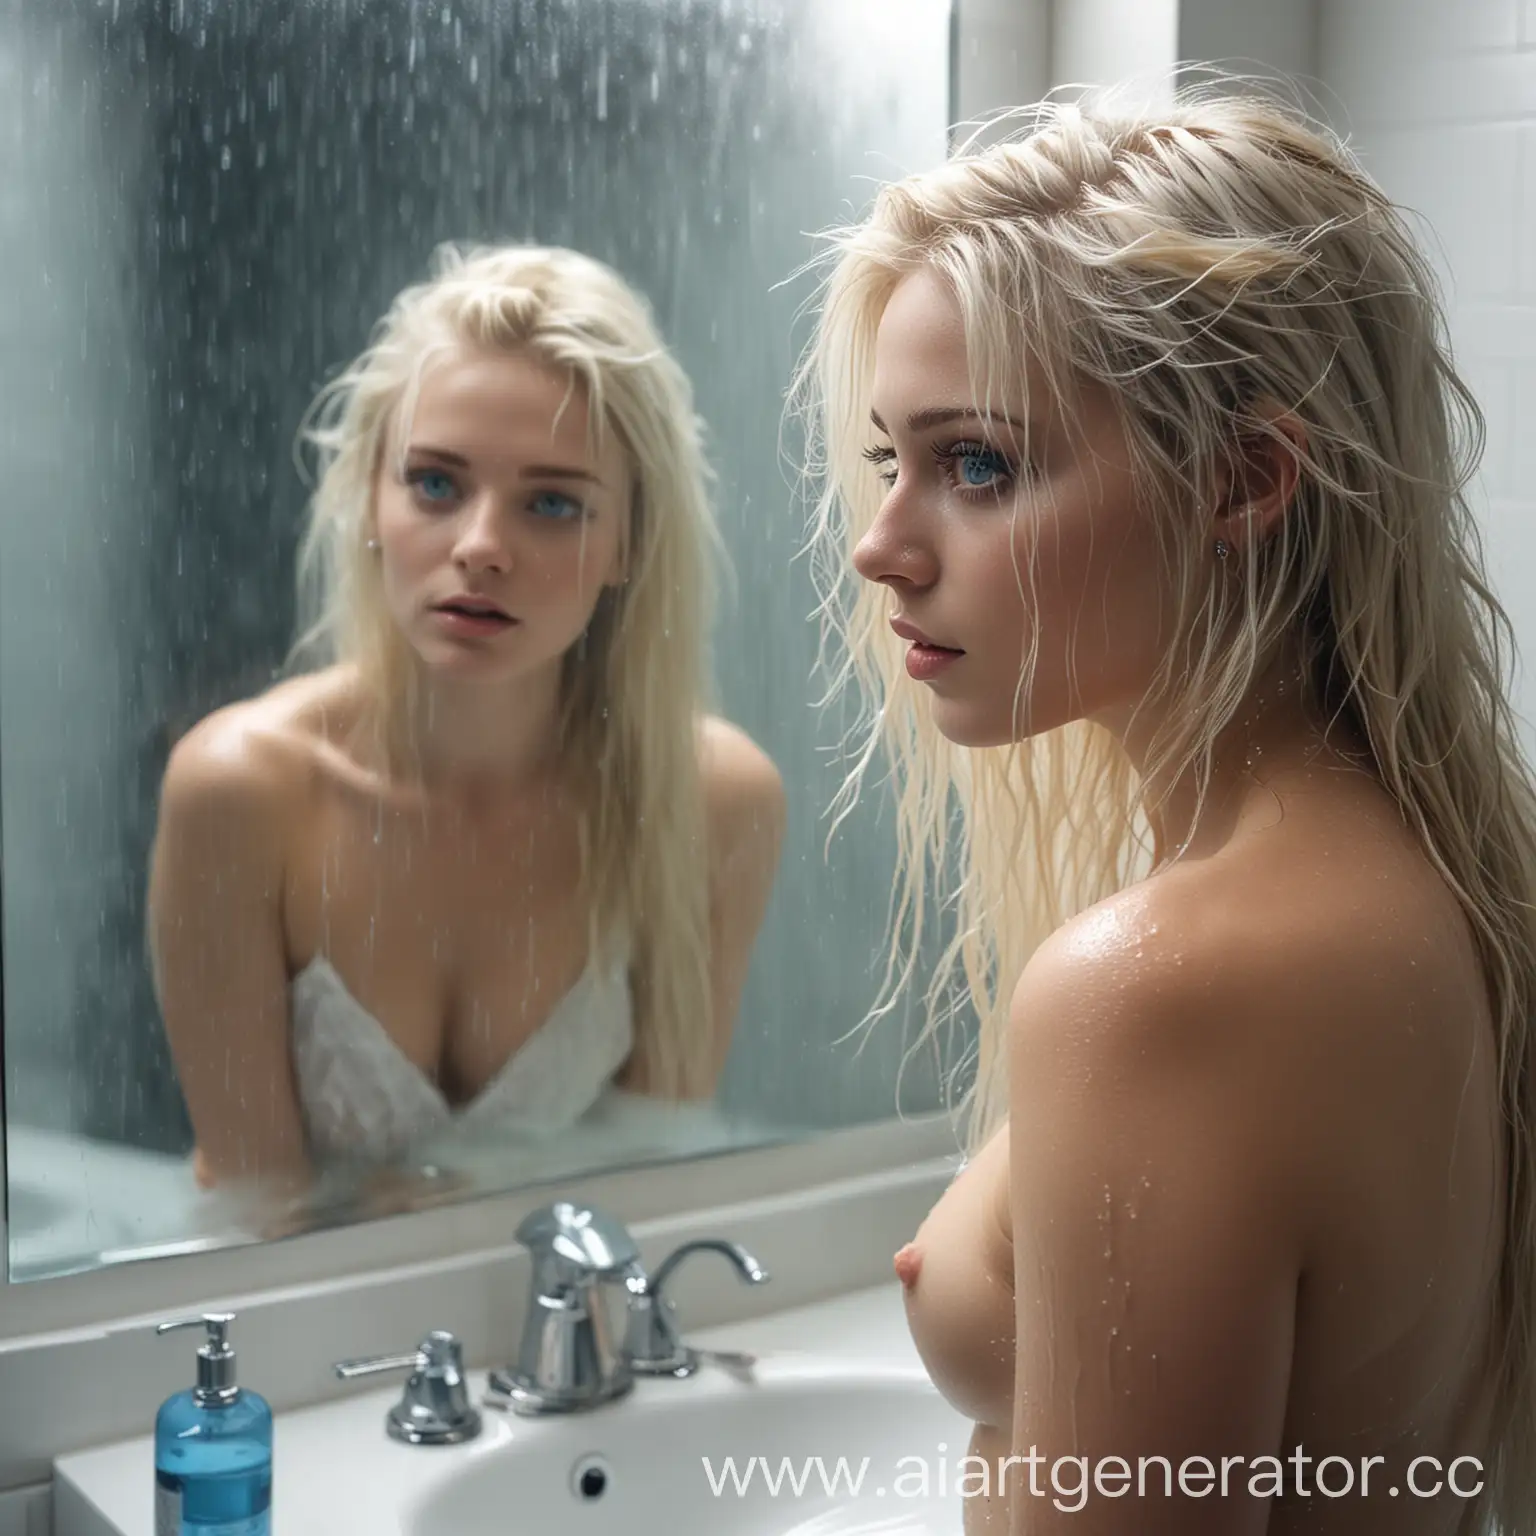 Blonde-Woman-Admiring-Reflection-in-Foggy-Bathroom-Mirror